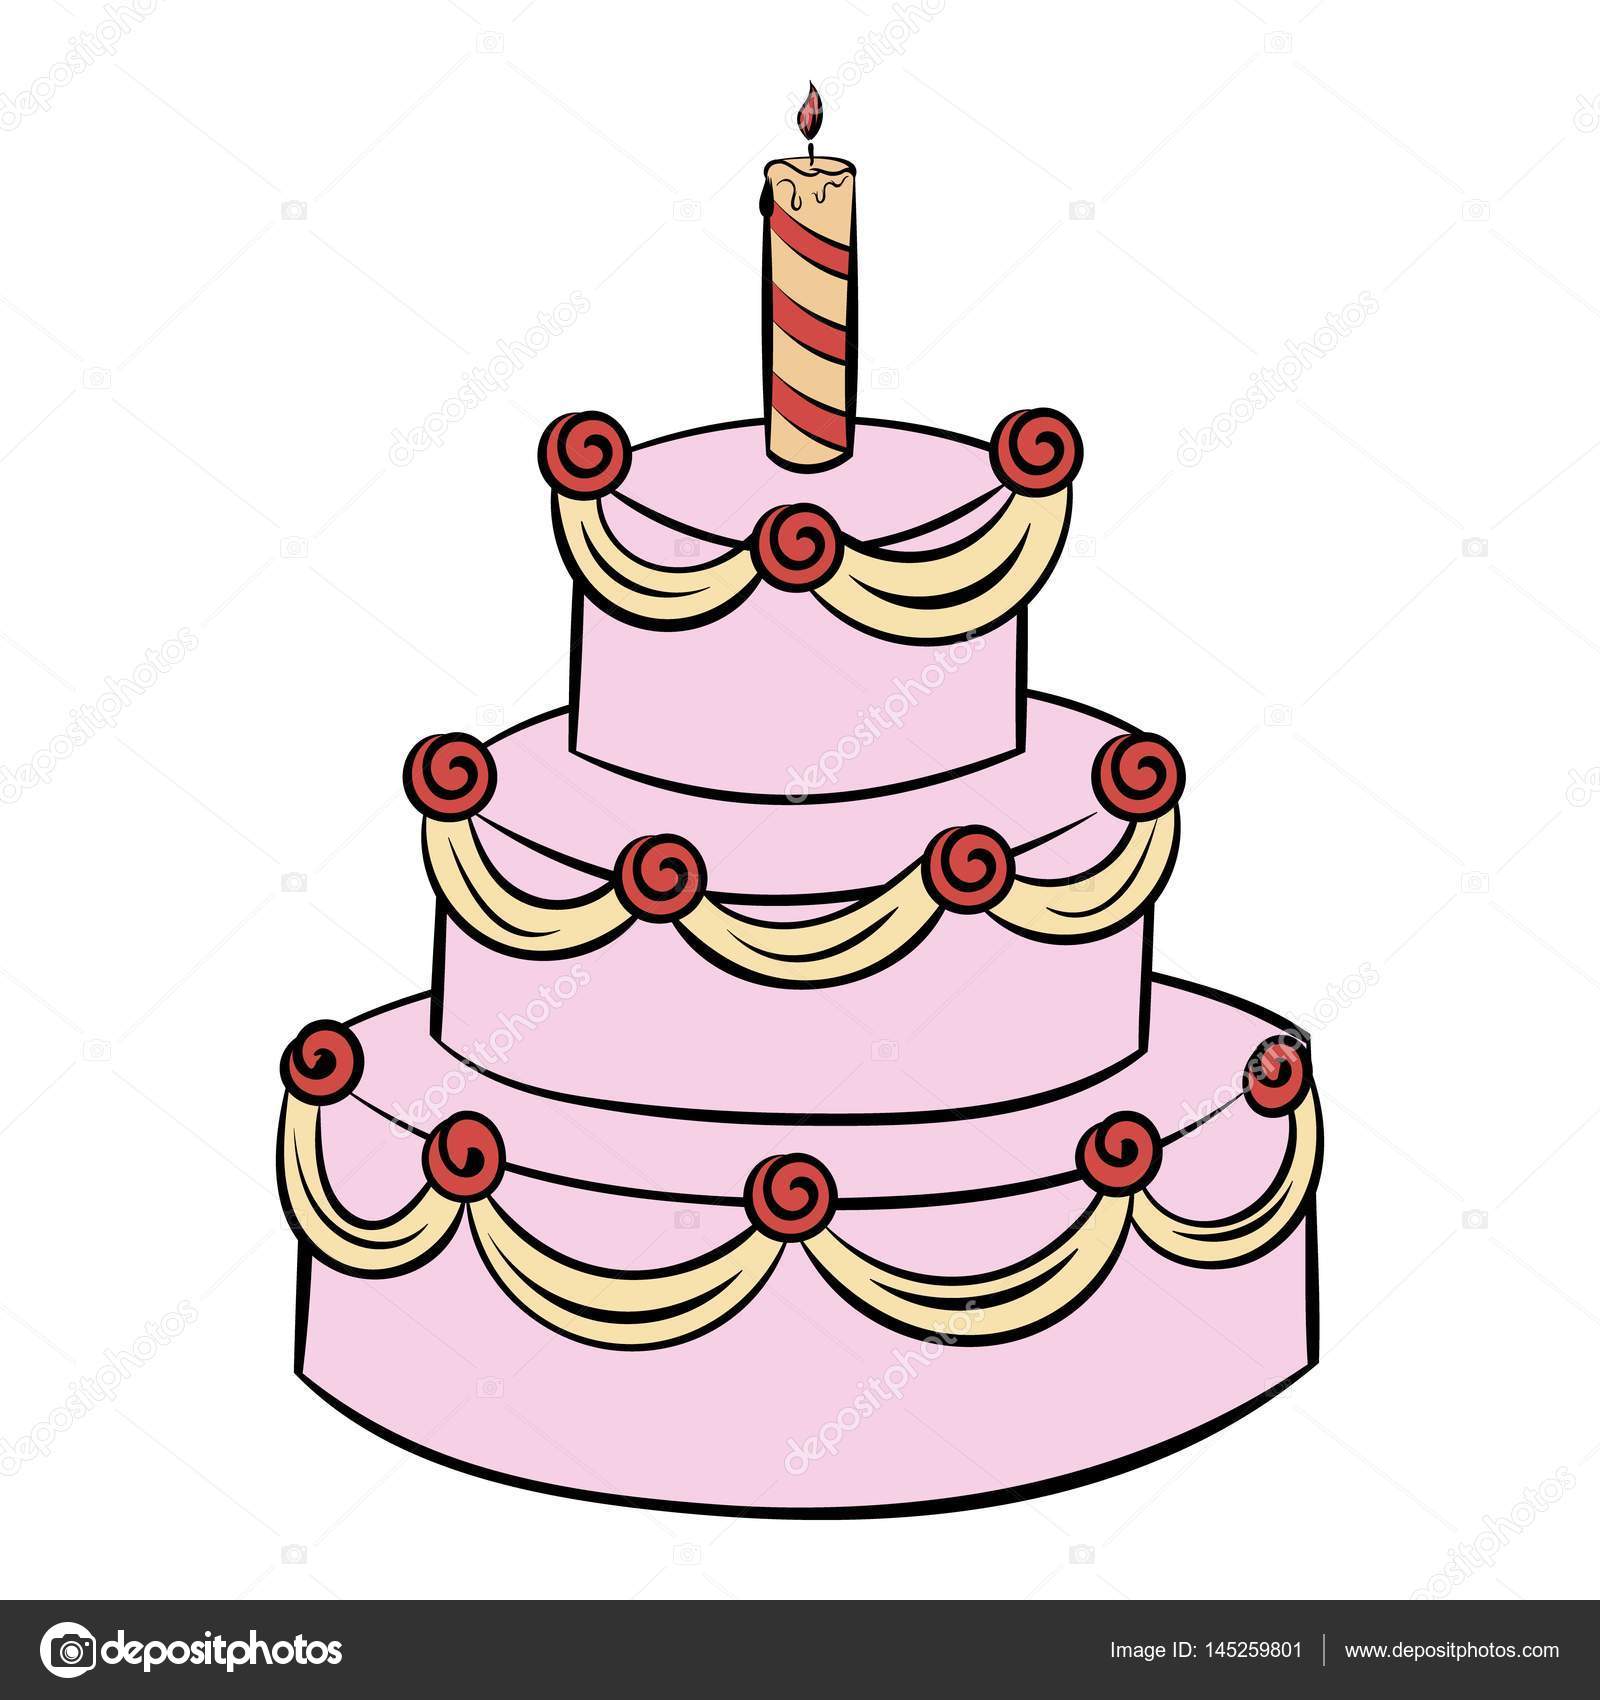 最新のhd3 段 誕生 日 ケーキ イラスト ただのディズニー画像